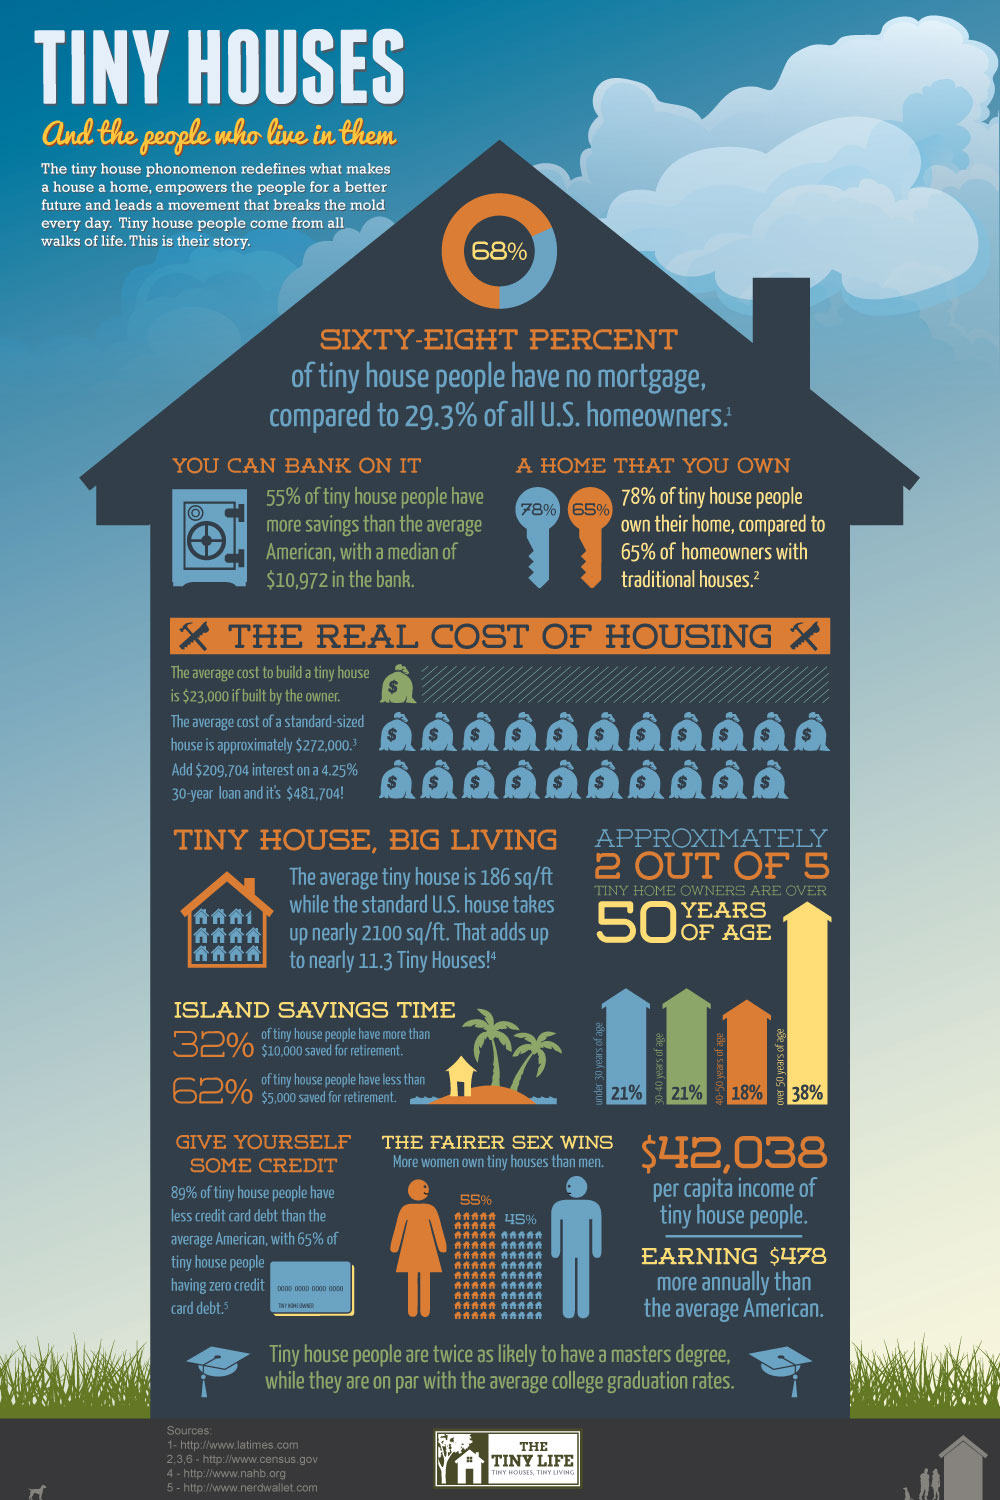 Tiny House movement/mouvement de la petite maison TinyHouses-Infographic-1000wlogo